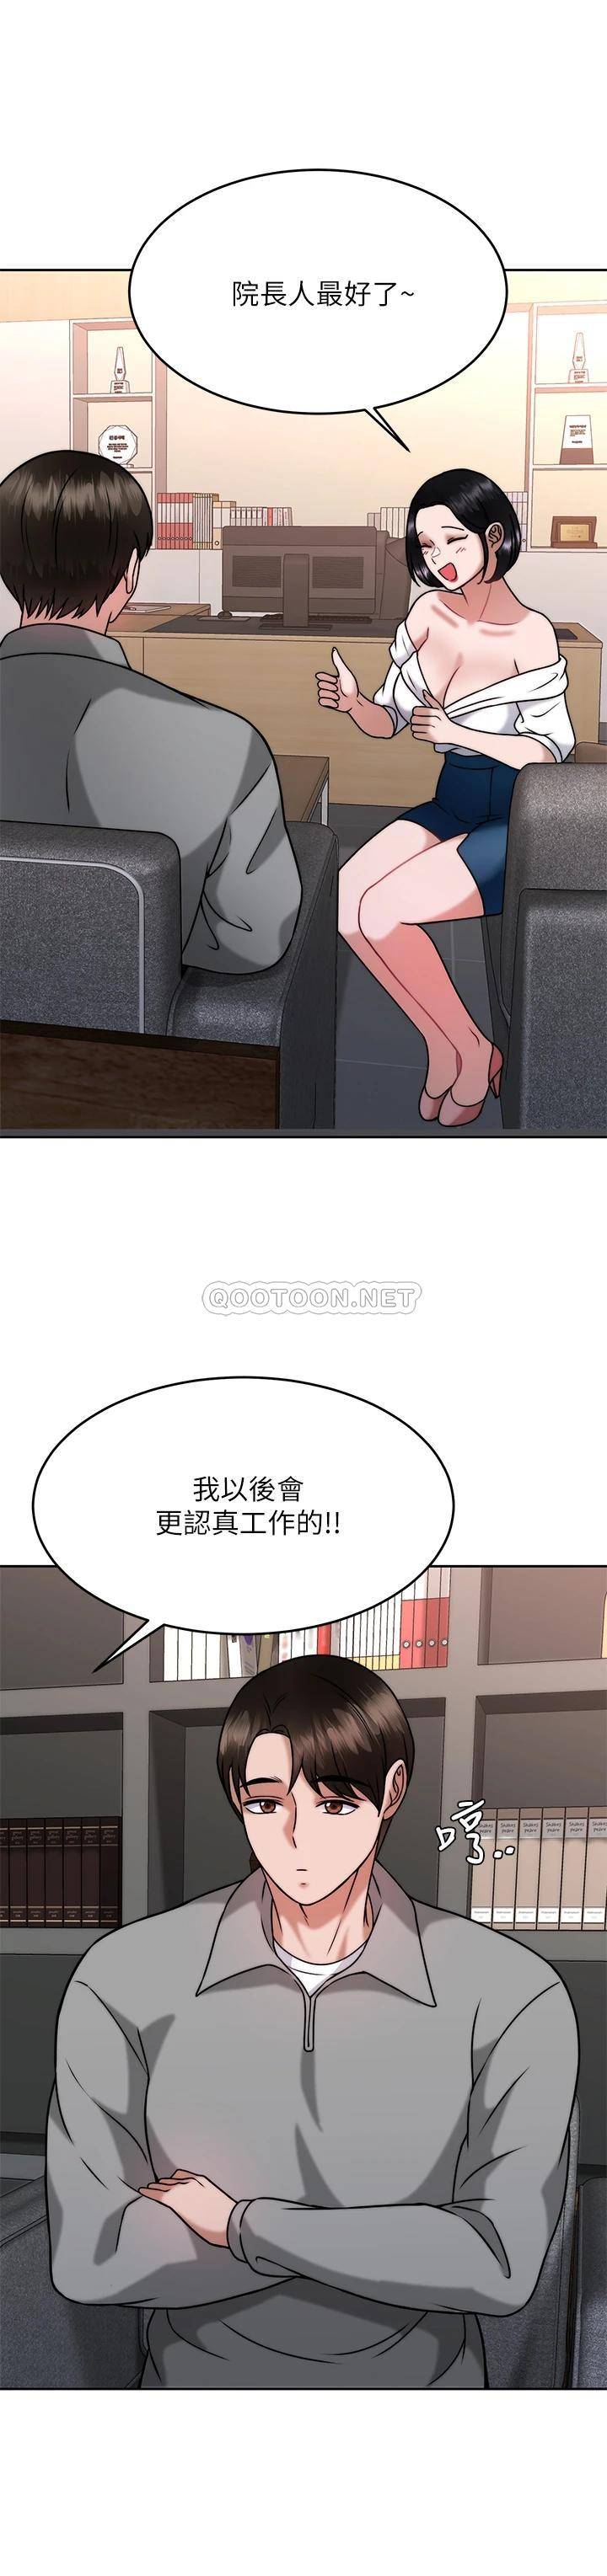 韩国污漫画 催眠治欲師 第31话偷偷自慰被发现?! 26